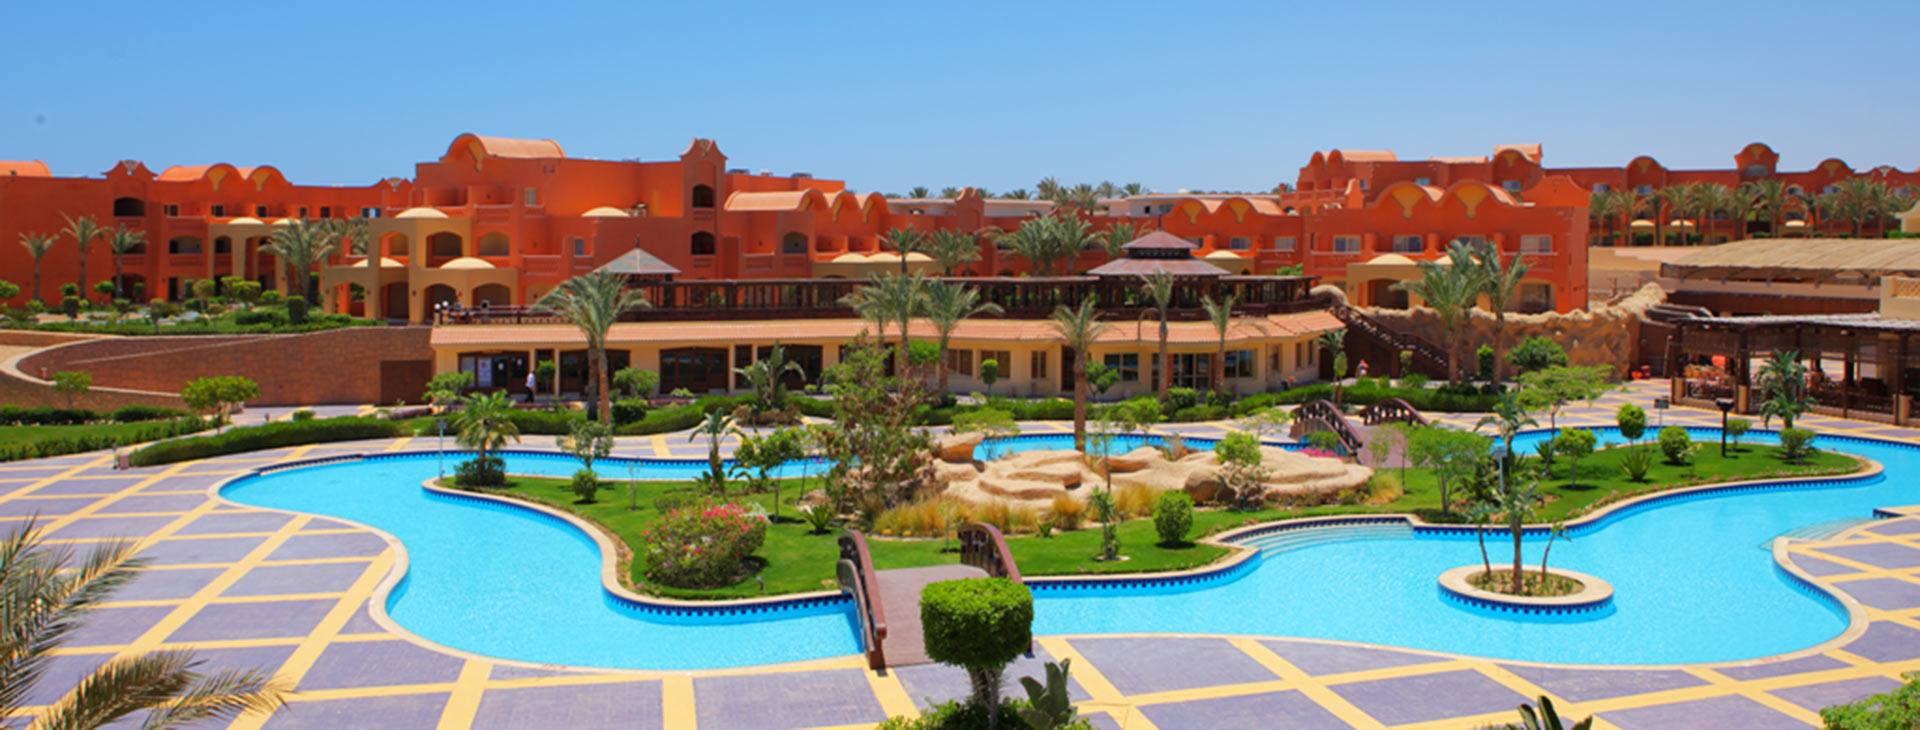 египет шарм эль шейх отель шарм плаза 5 звезд